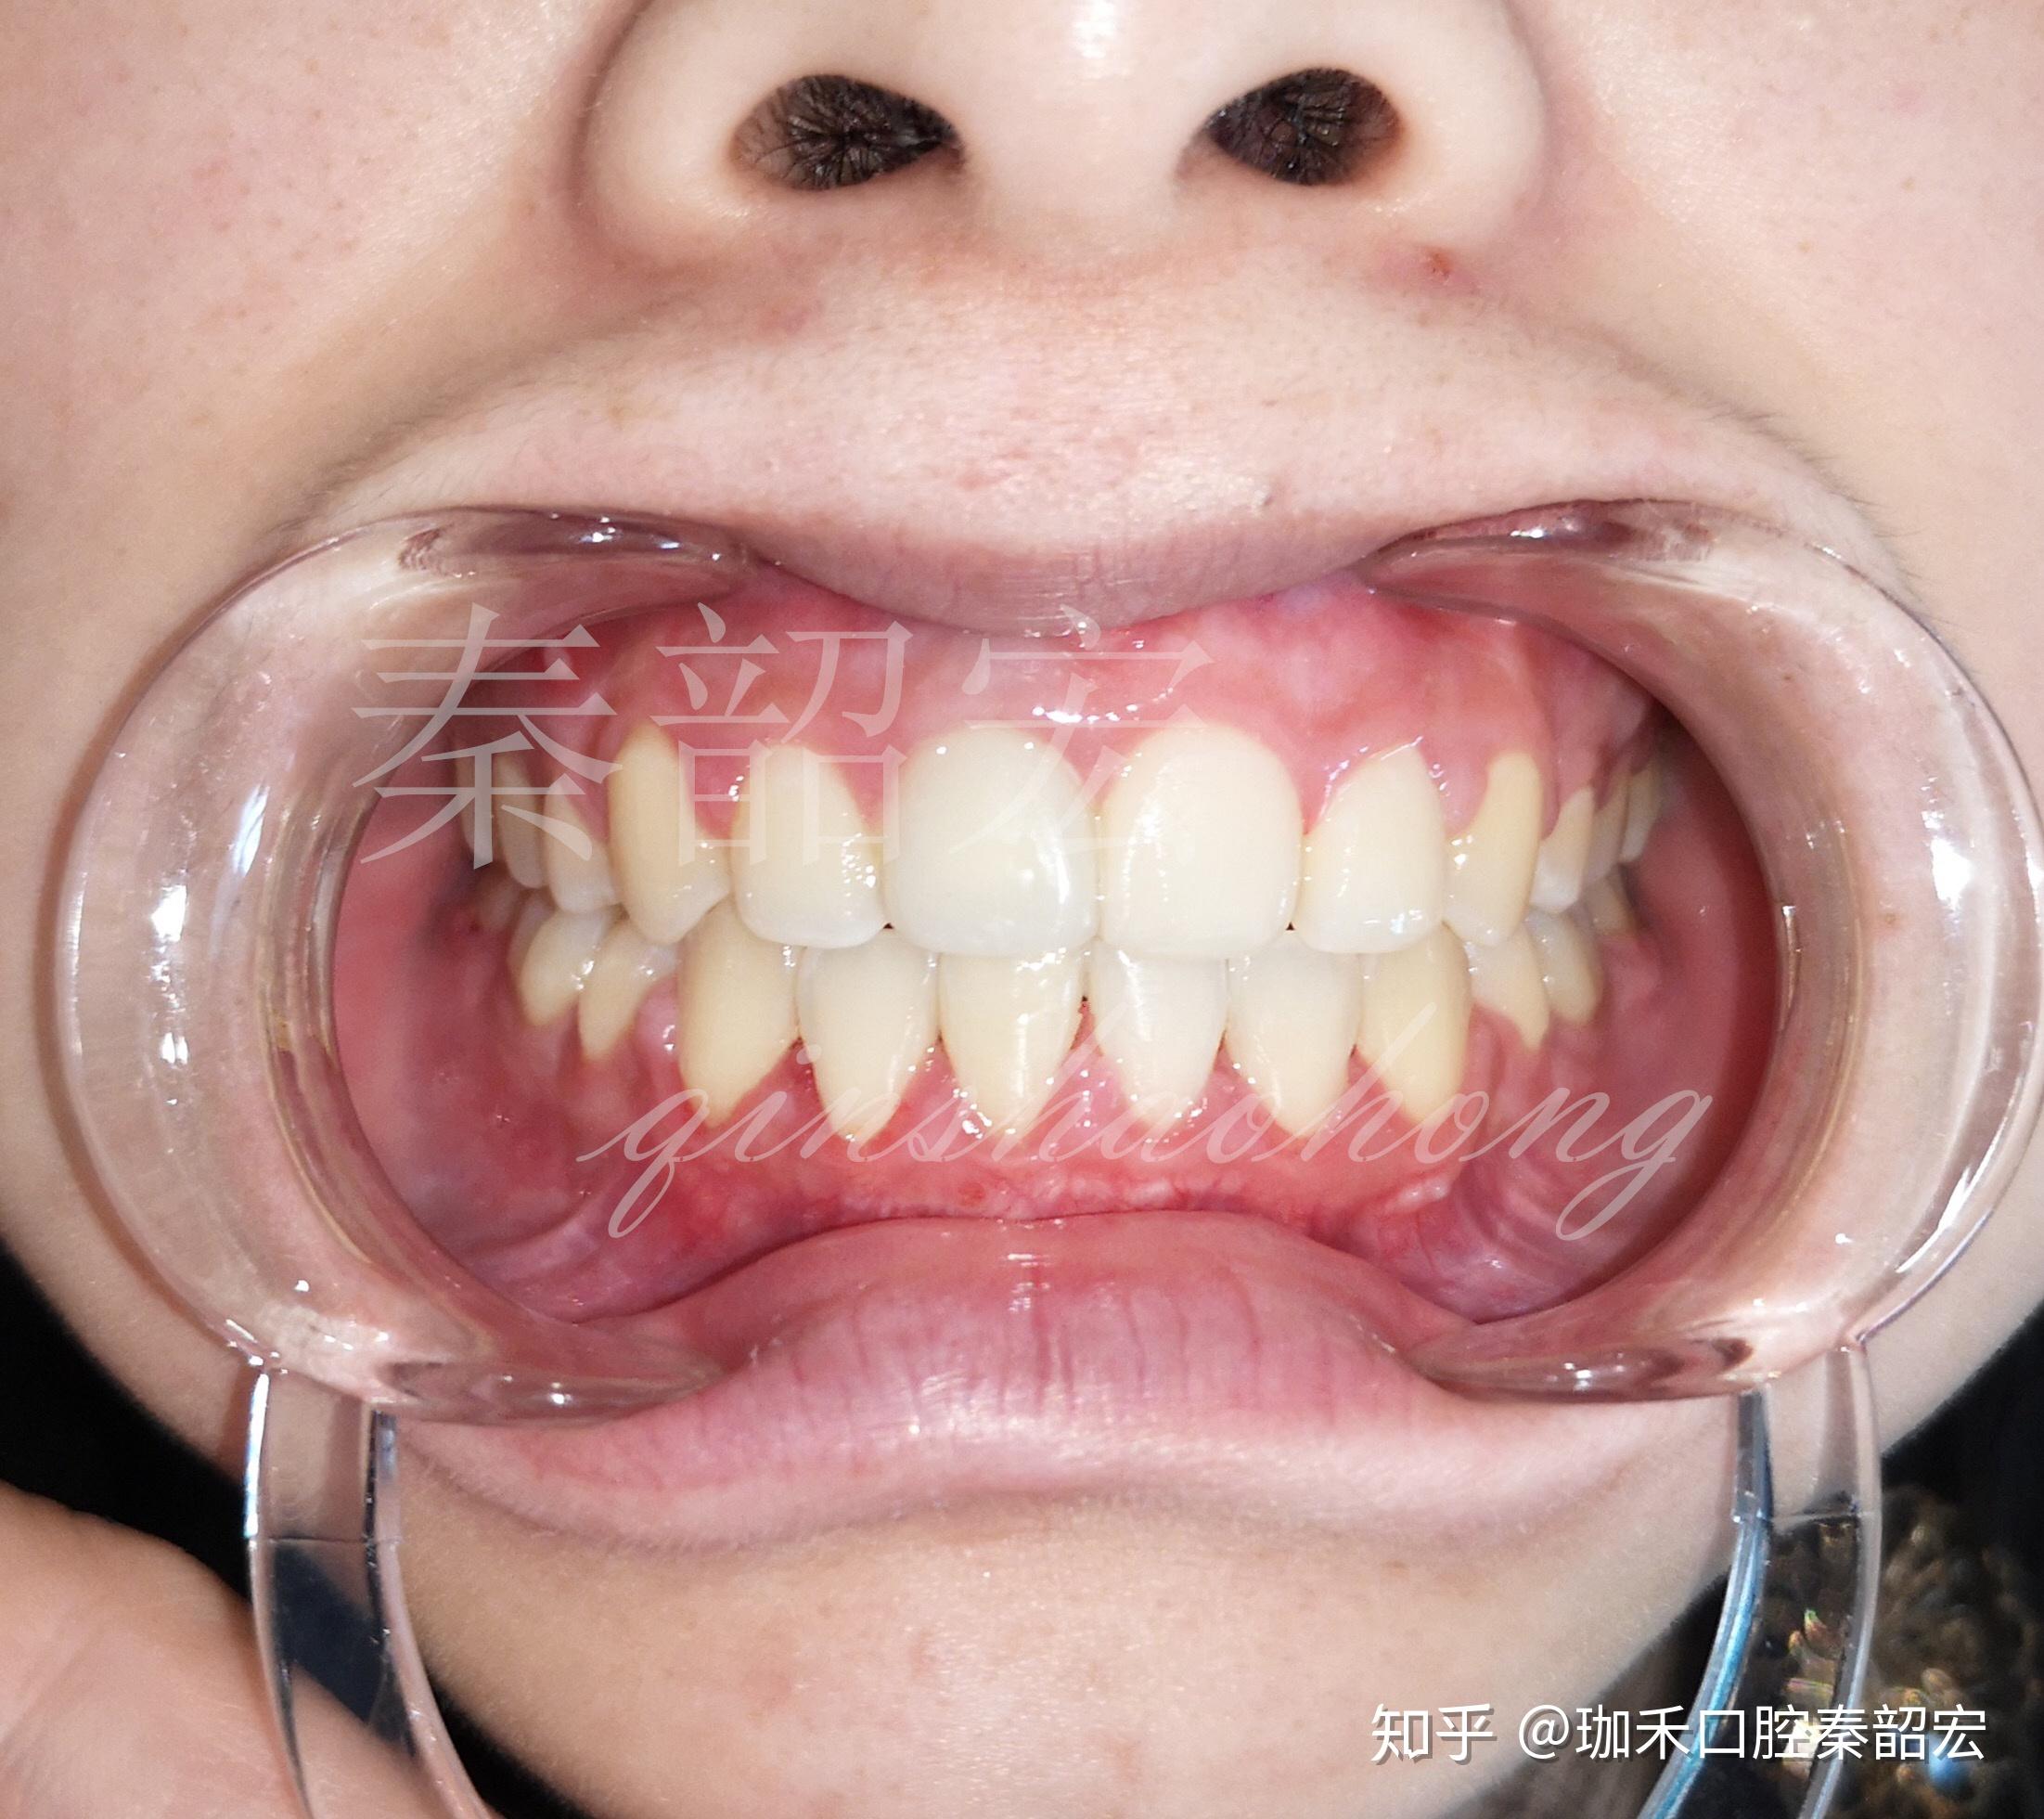 上下牙龈正常是什么样的图片?用一张标准的咬合图告诉你-欣美整形网